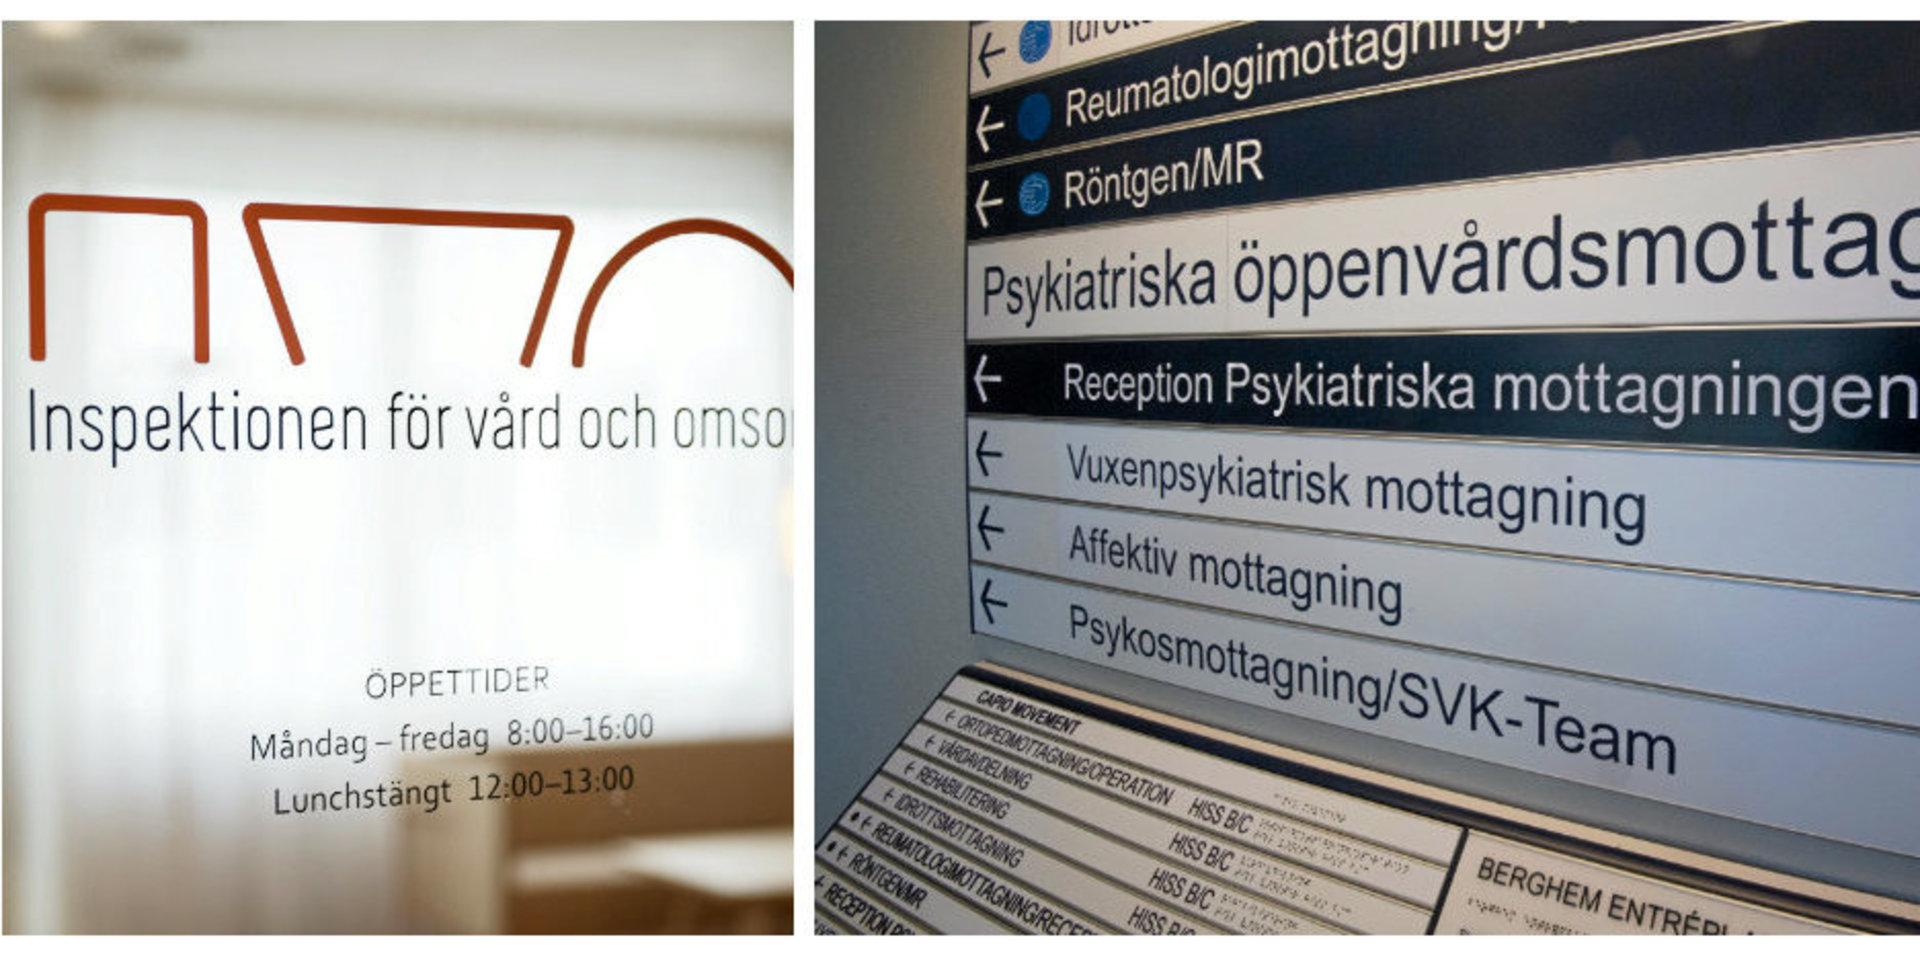 Vid inspektionen i Halmstad kommer Ivo att titta på hur den vuxenpsykiatriska öppenvården arbetar med samverkan och systematiskt kvalitetsarbete.